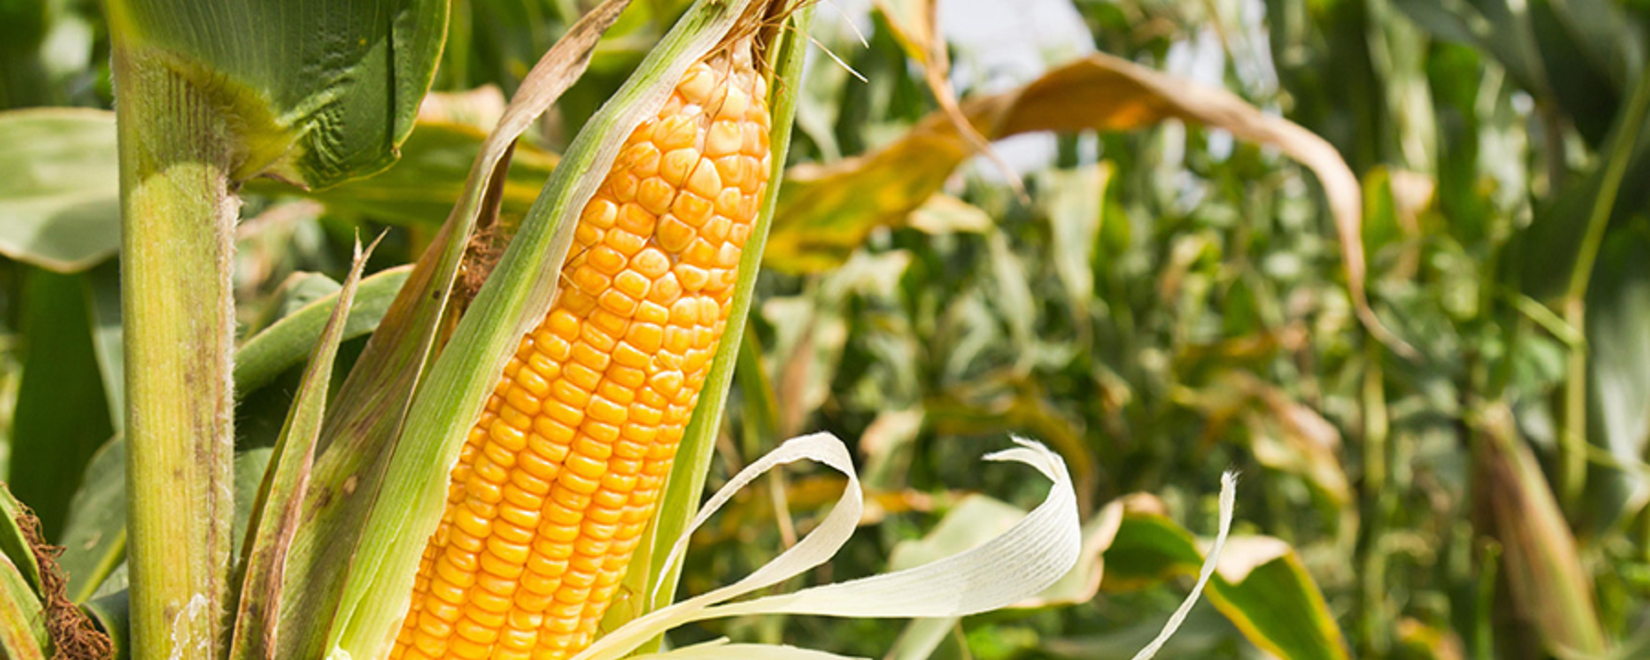 Фьючерсы кукурузы и сои выросли во вторник, пшеница смешанная в преддверии отчета USDA